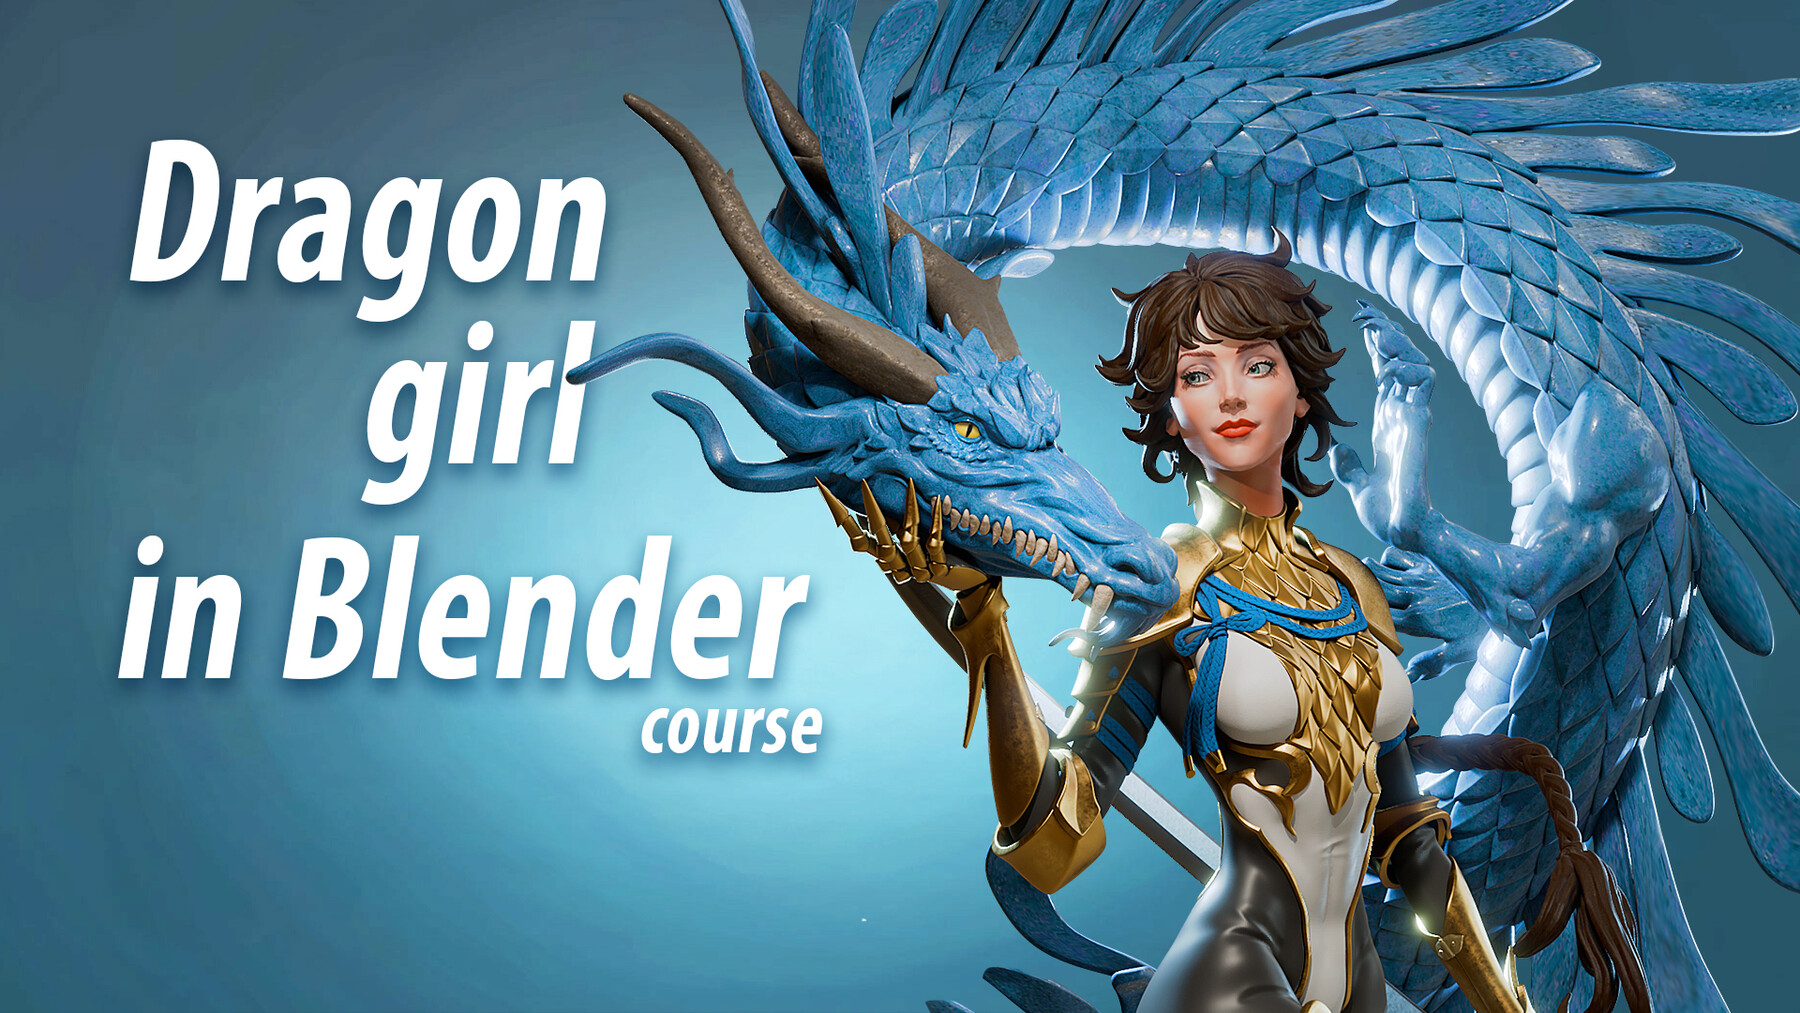 Blender龙女人物角色雕刻建模材质灯光渲染教程 中英文字幕 Dragon girl in Blender course